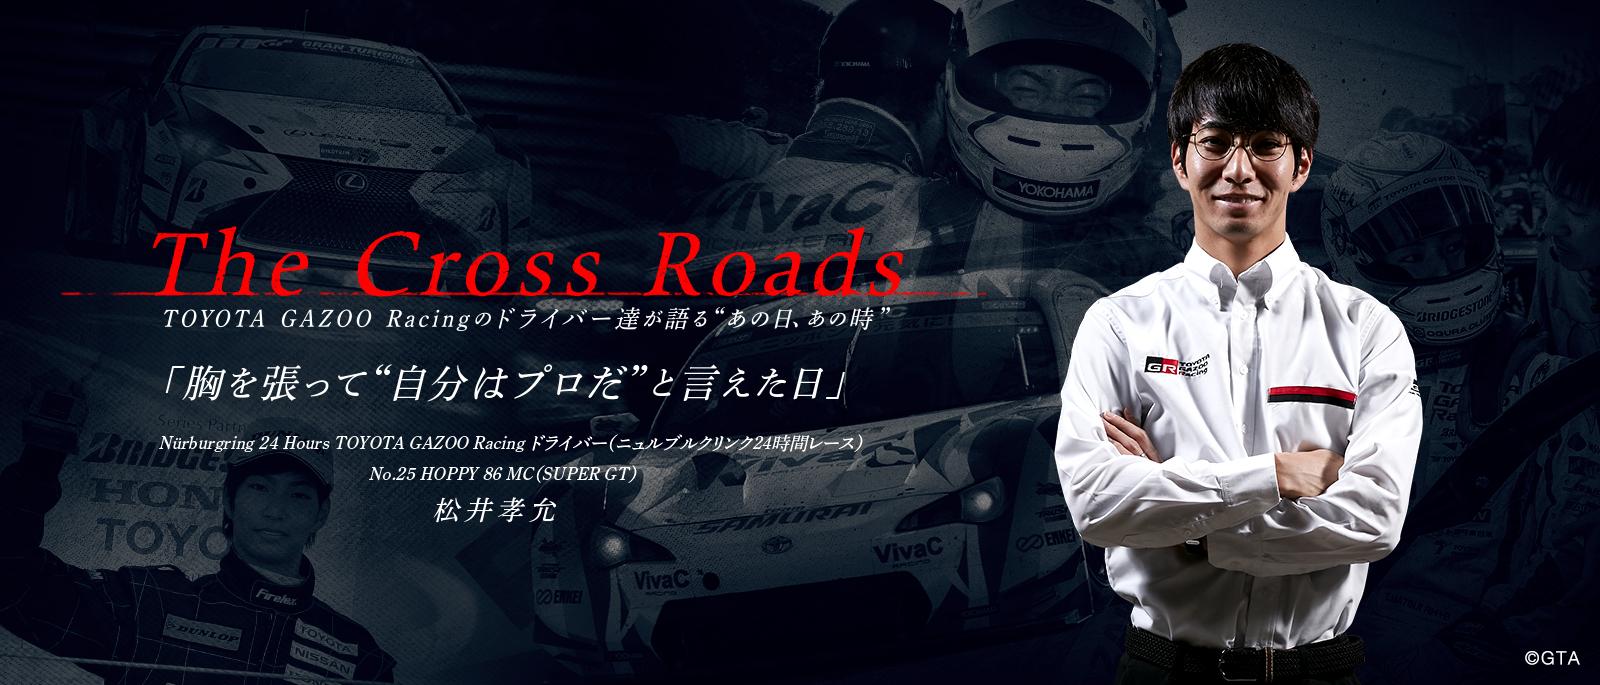 松井 孝允「胸を張って自分はプロだと言えた日」| The Cross Roads 〜TOYOTA GAZOO Racingのドライバー達が語るあの日、あの時〜